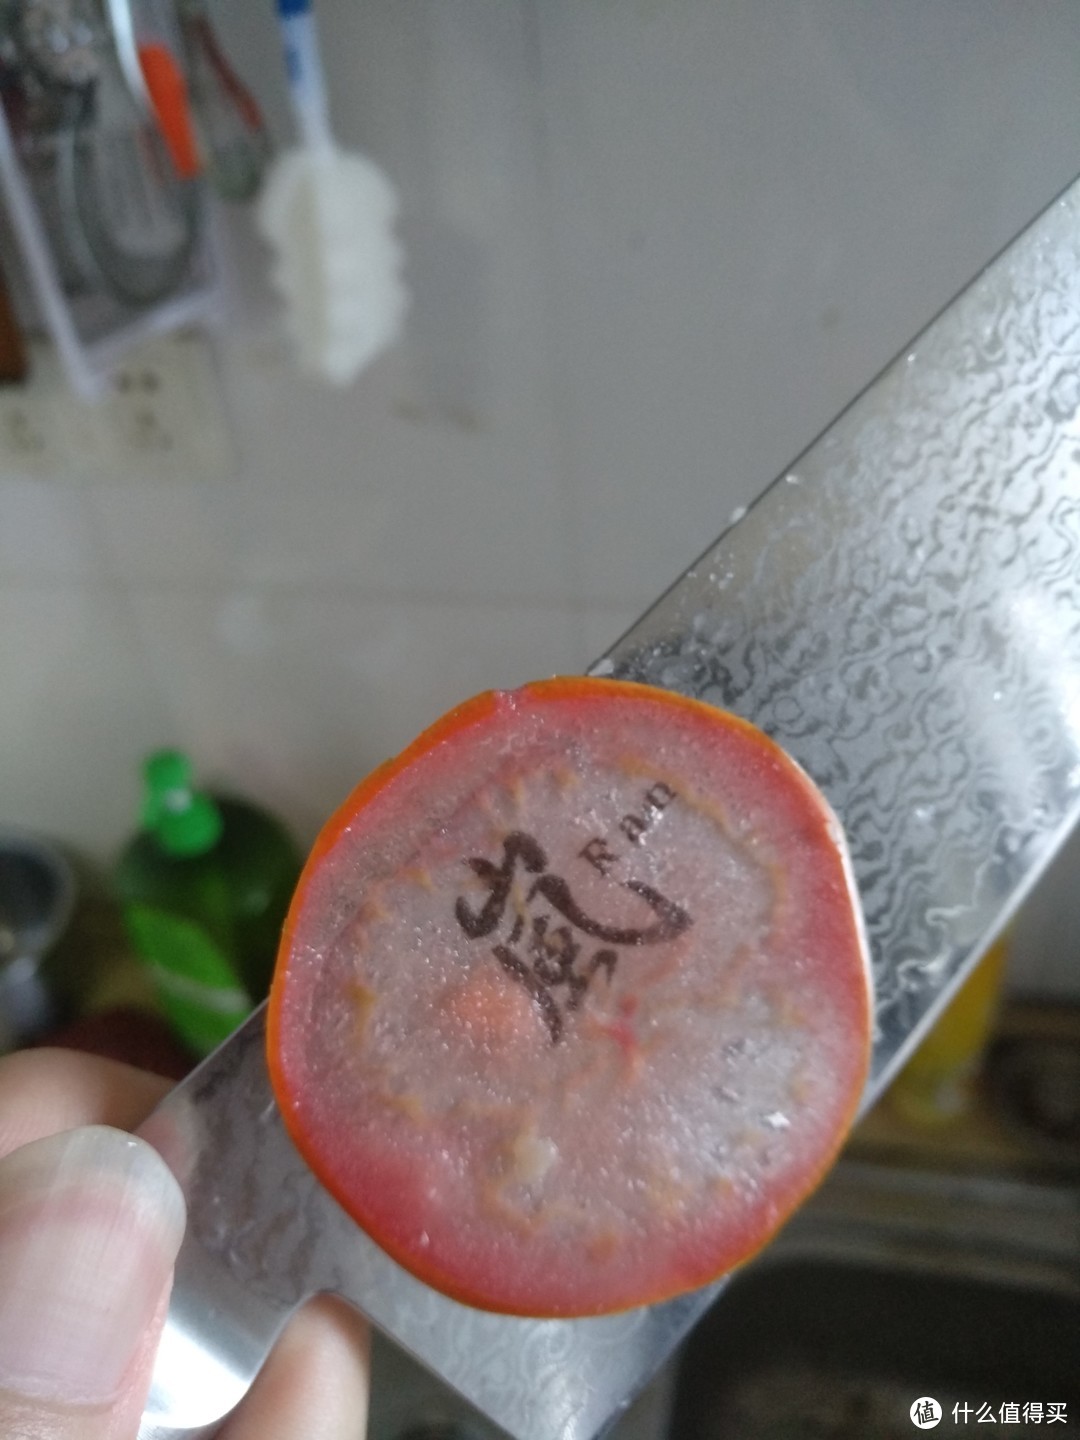 上一张随手切的超薄的西红柿片